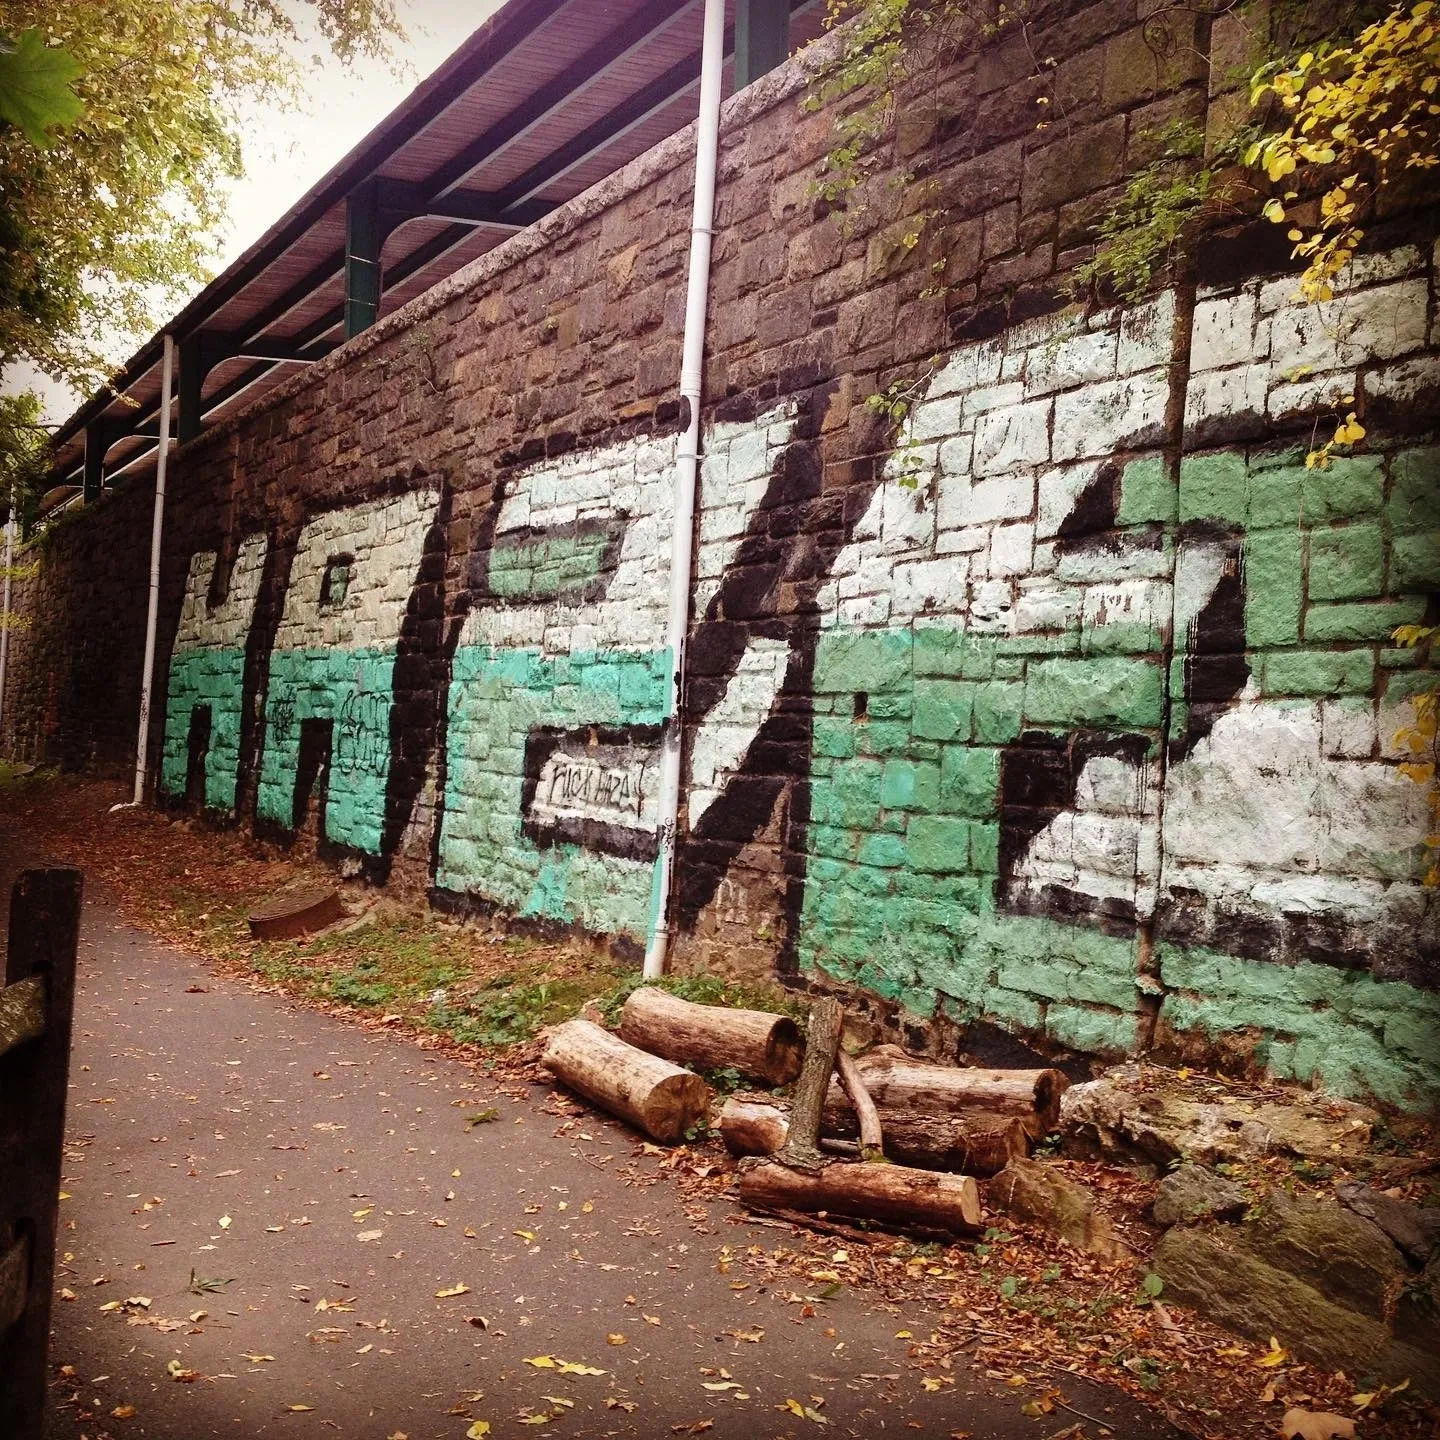 A brick wall with graffiti on it